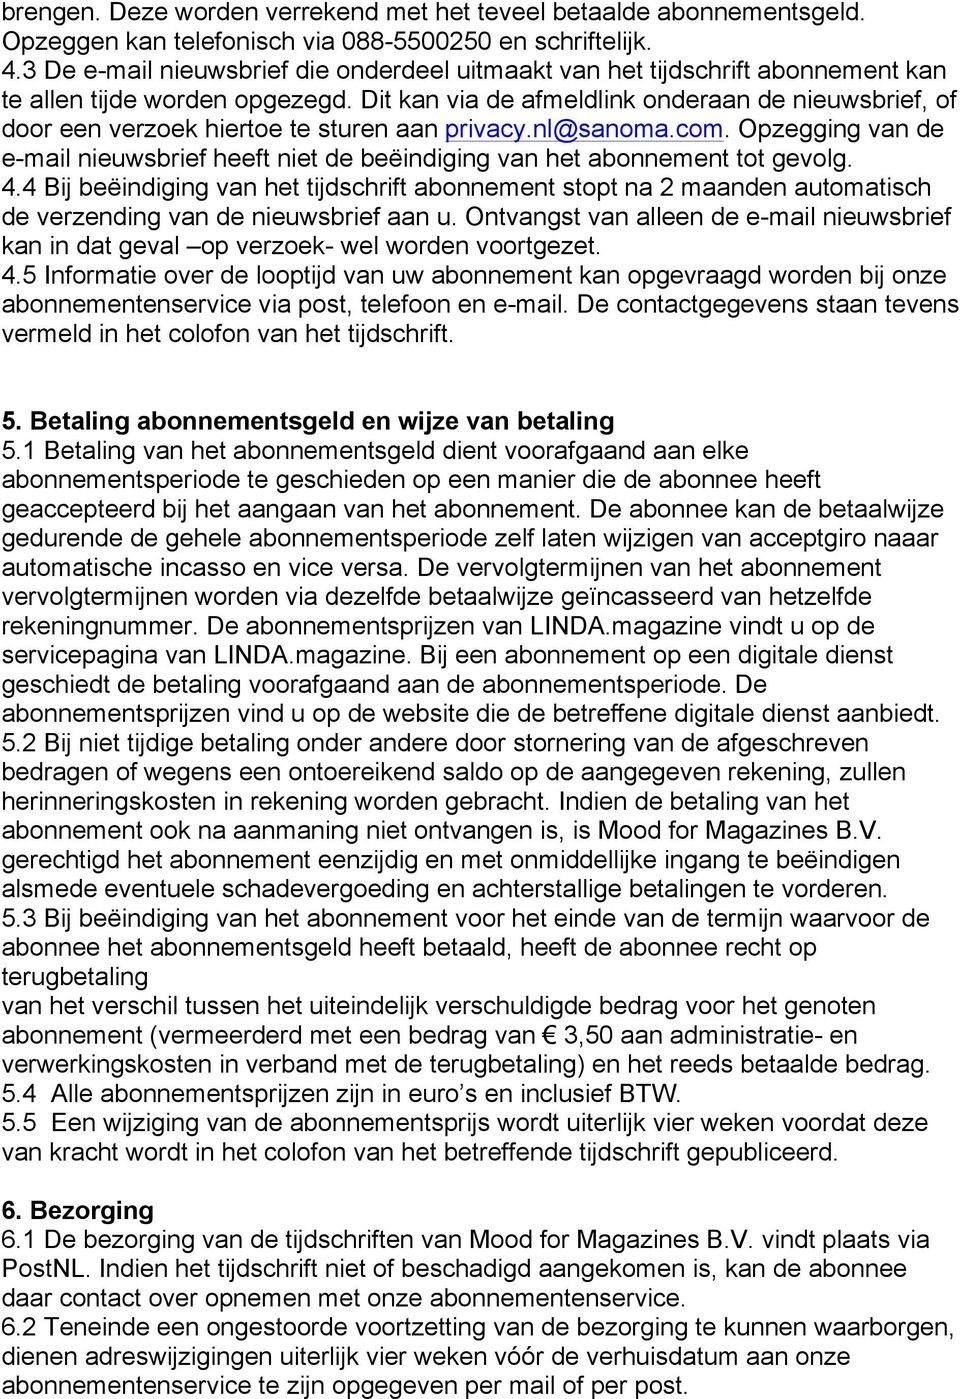 Dit kan via de afmeldlink onderaan de nieuwsbrief, of door een verzoek hiertoe te sturen aan privacy.nl@sanoma.com.